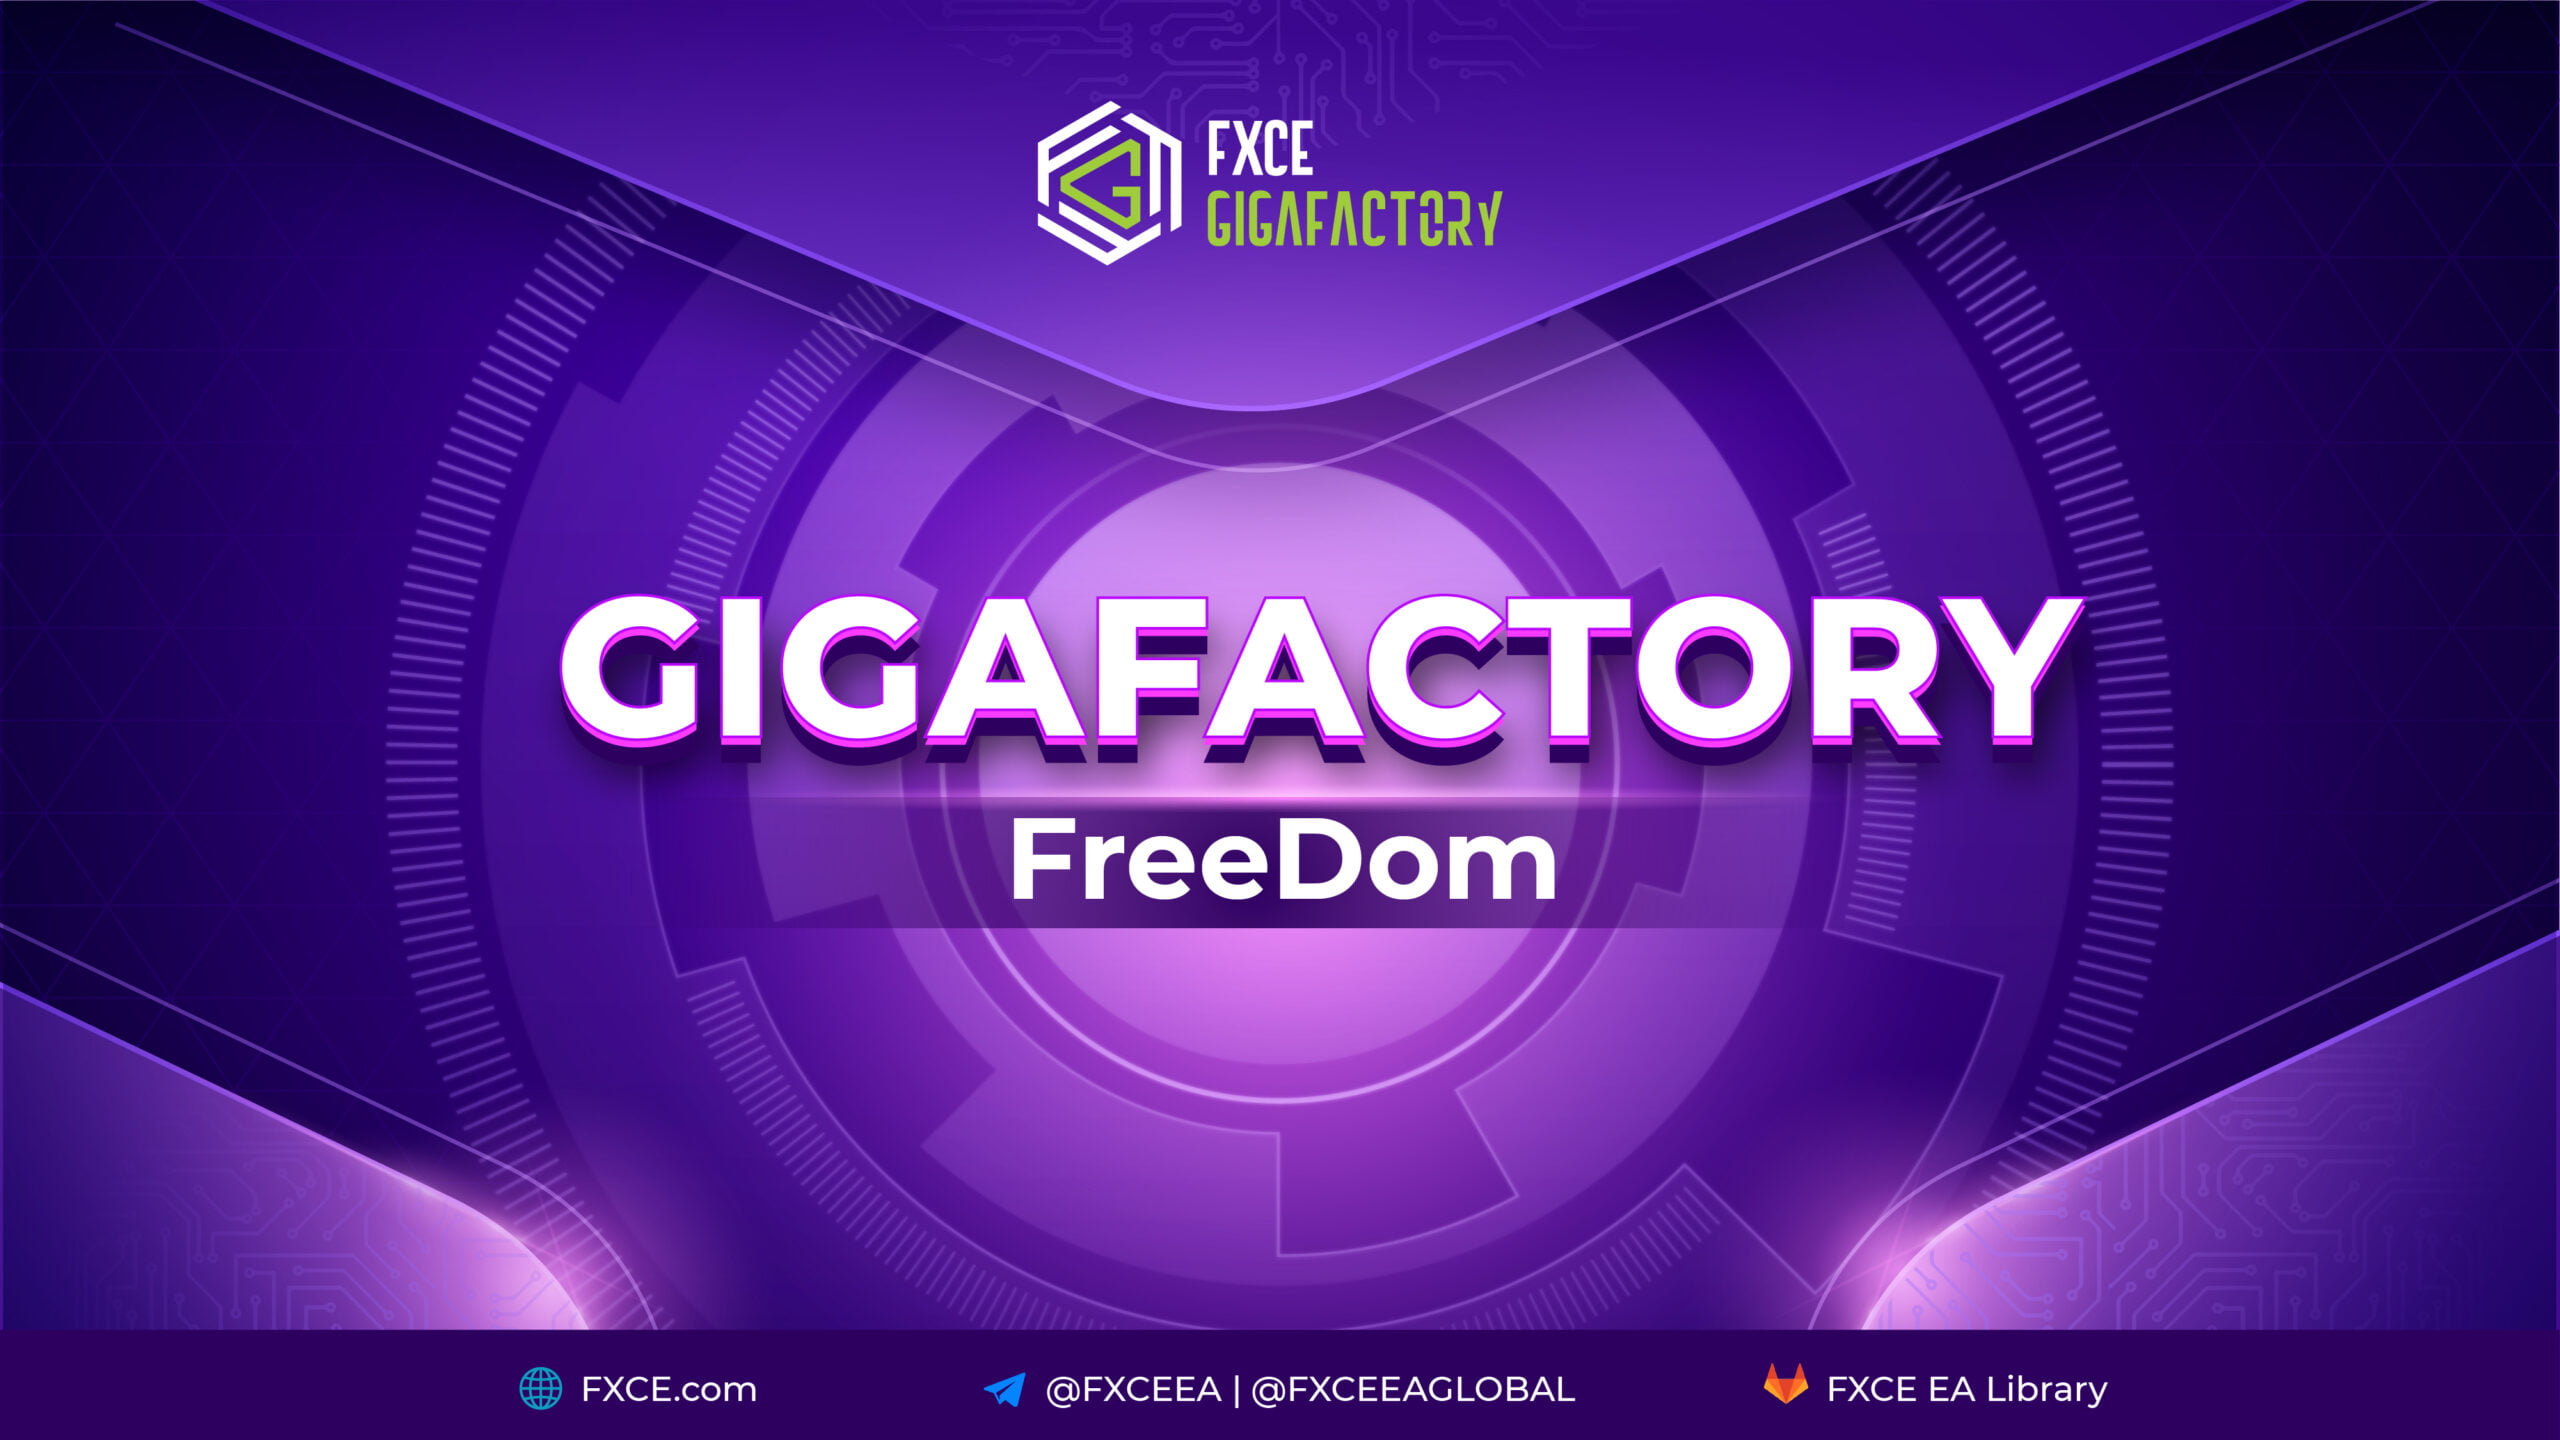 FXCE GigaFactory FreeDom 1.0 là gì?